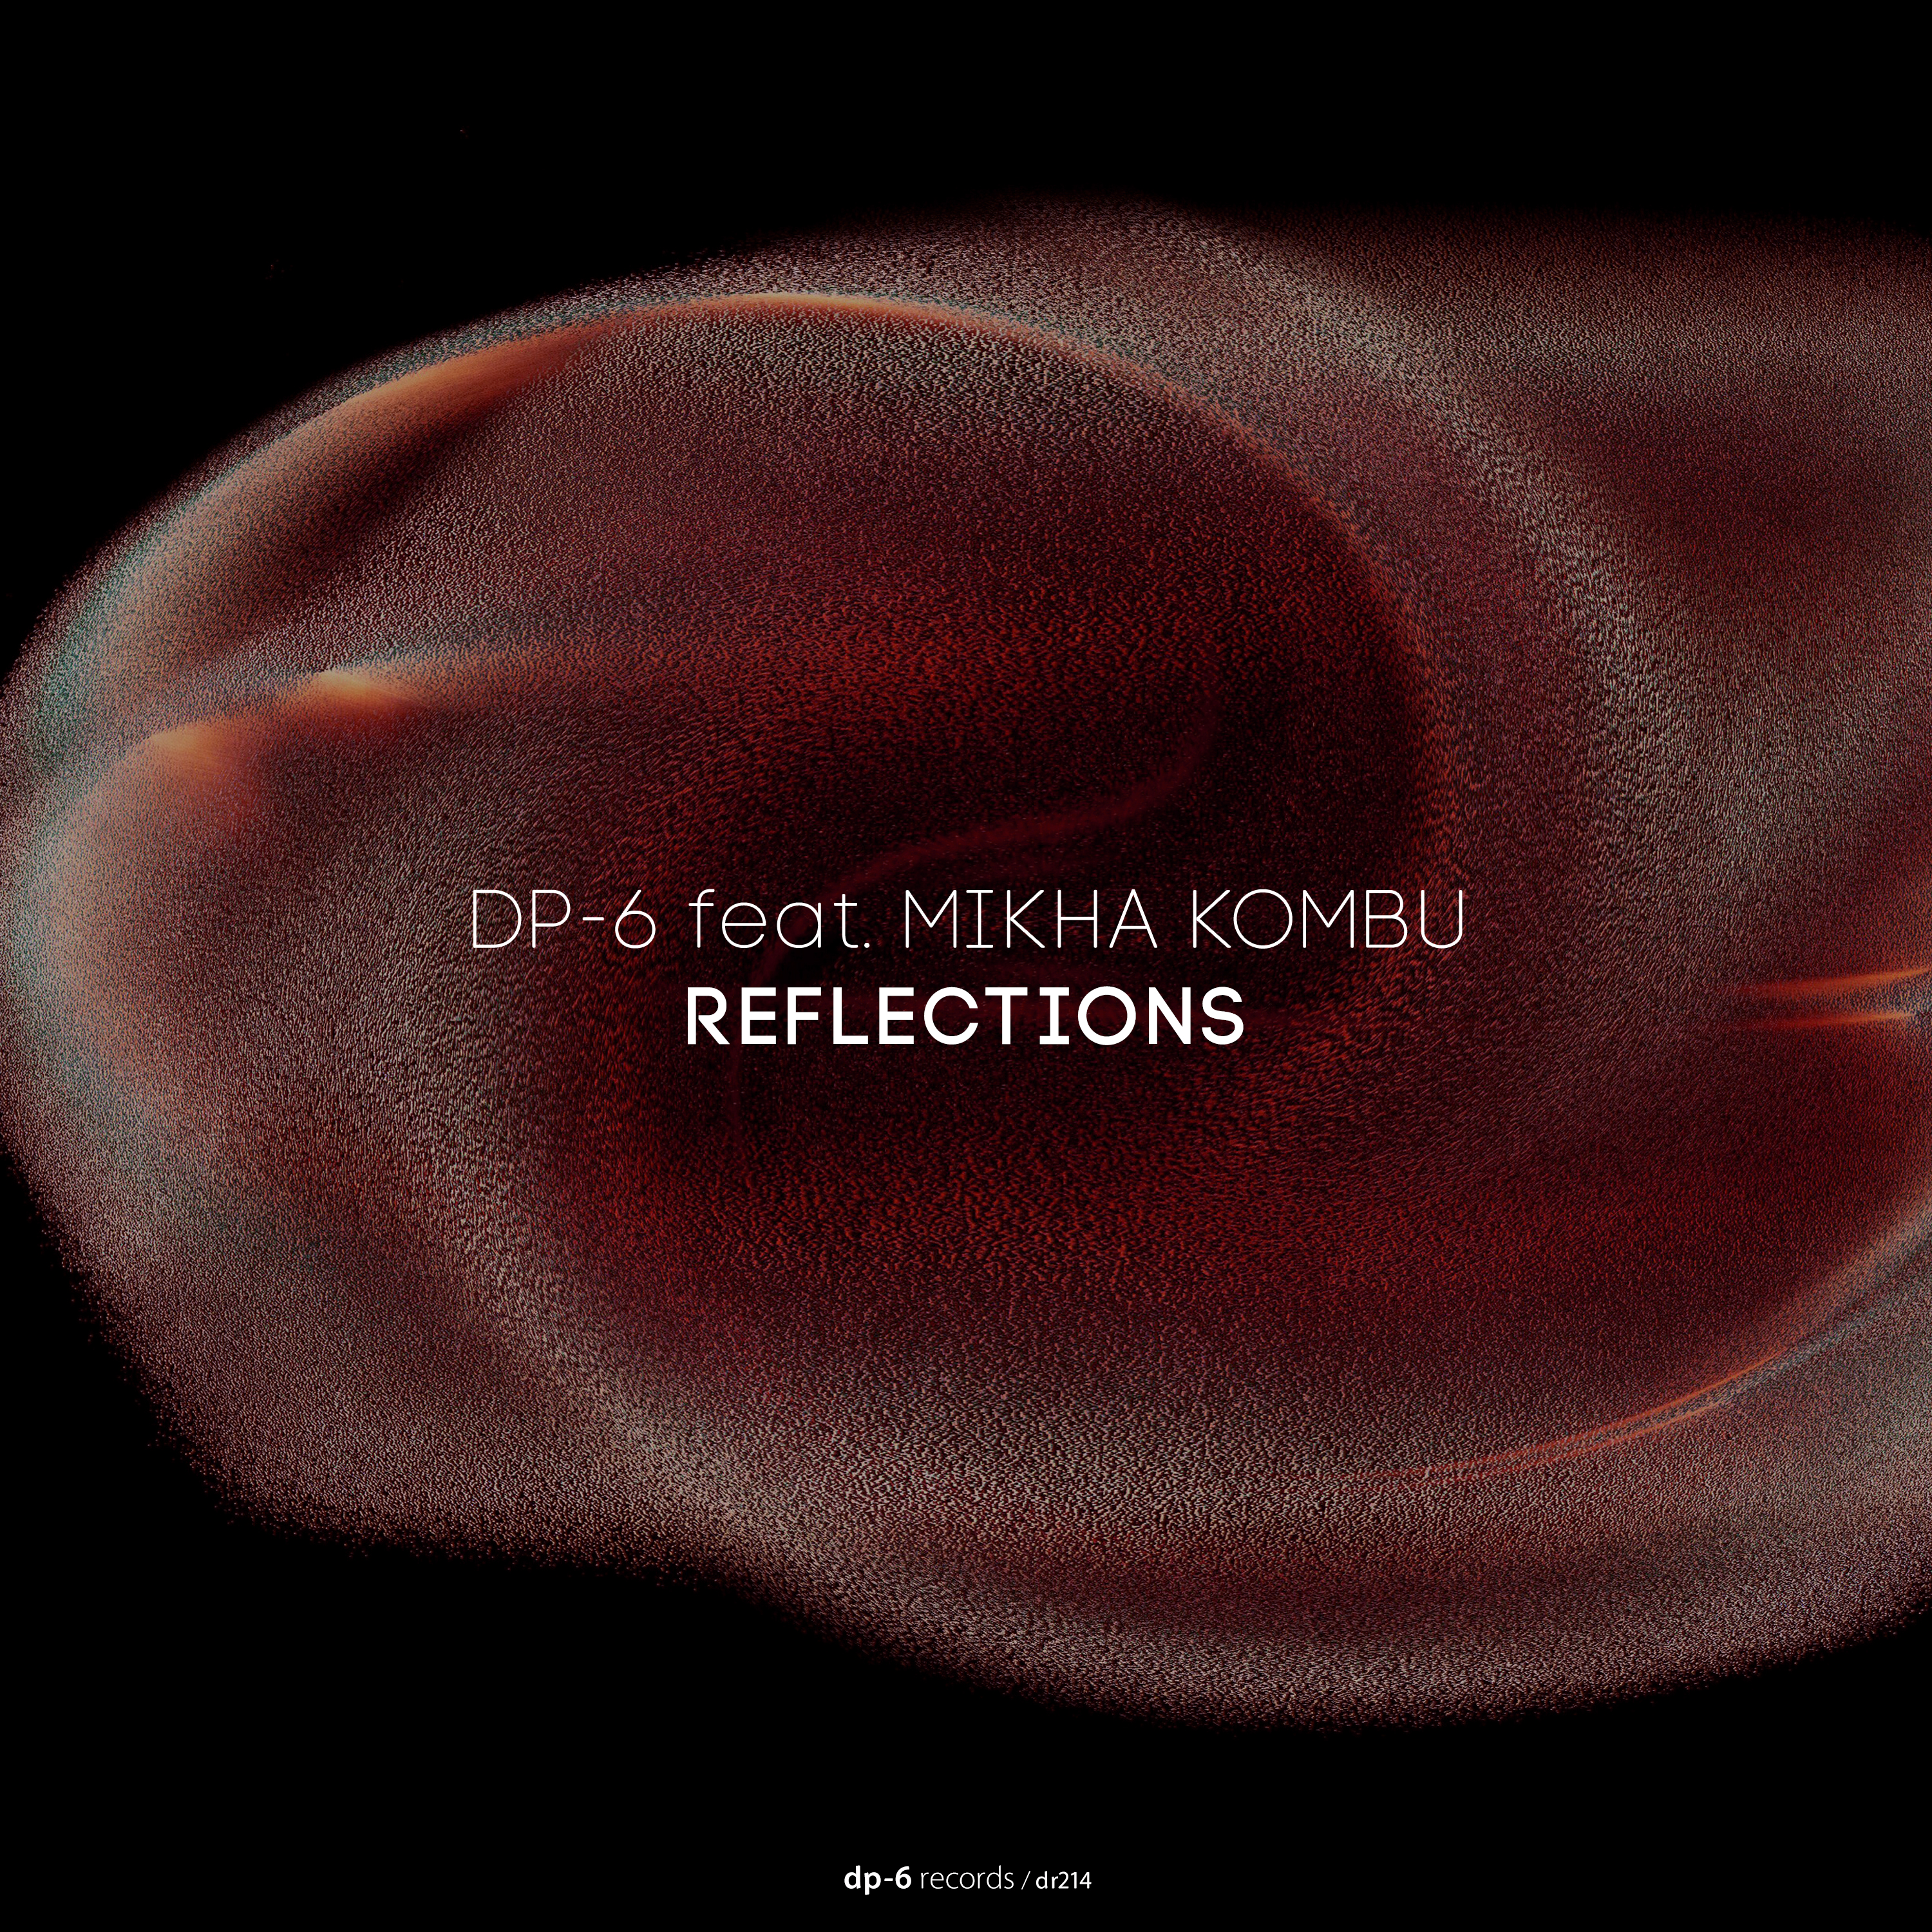 DP-6 feat. Mikha Kombu: Reflections